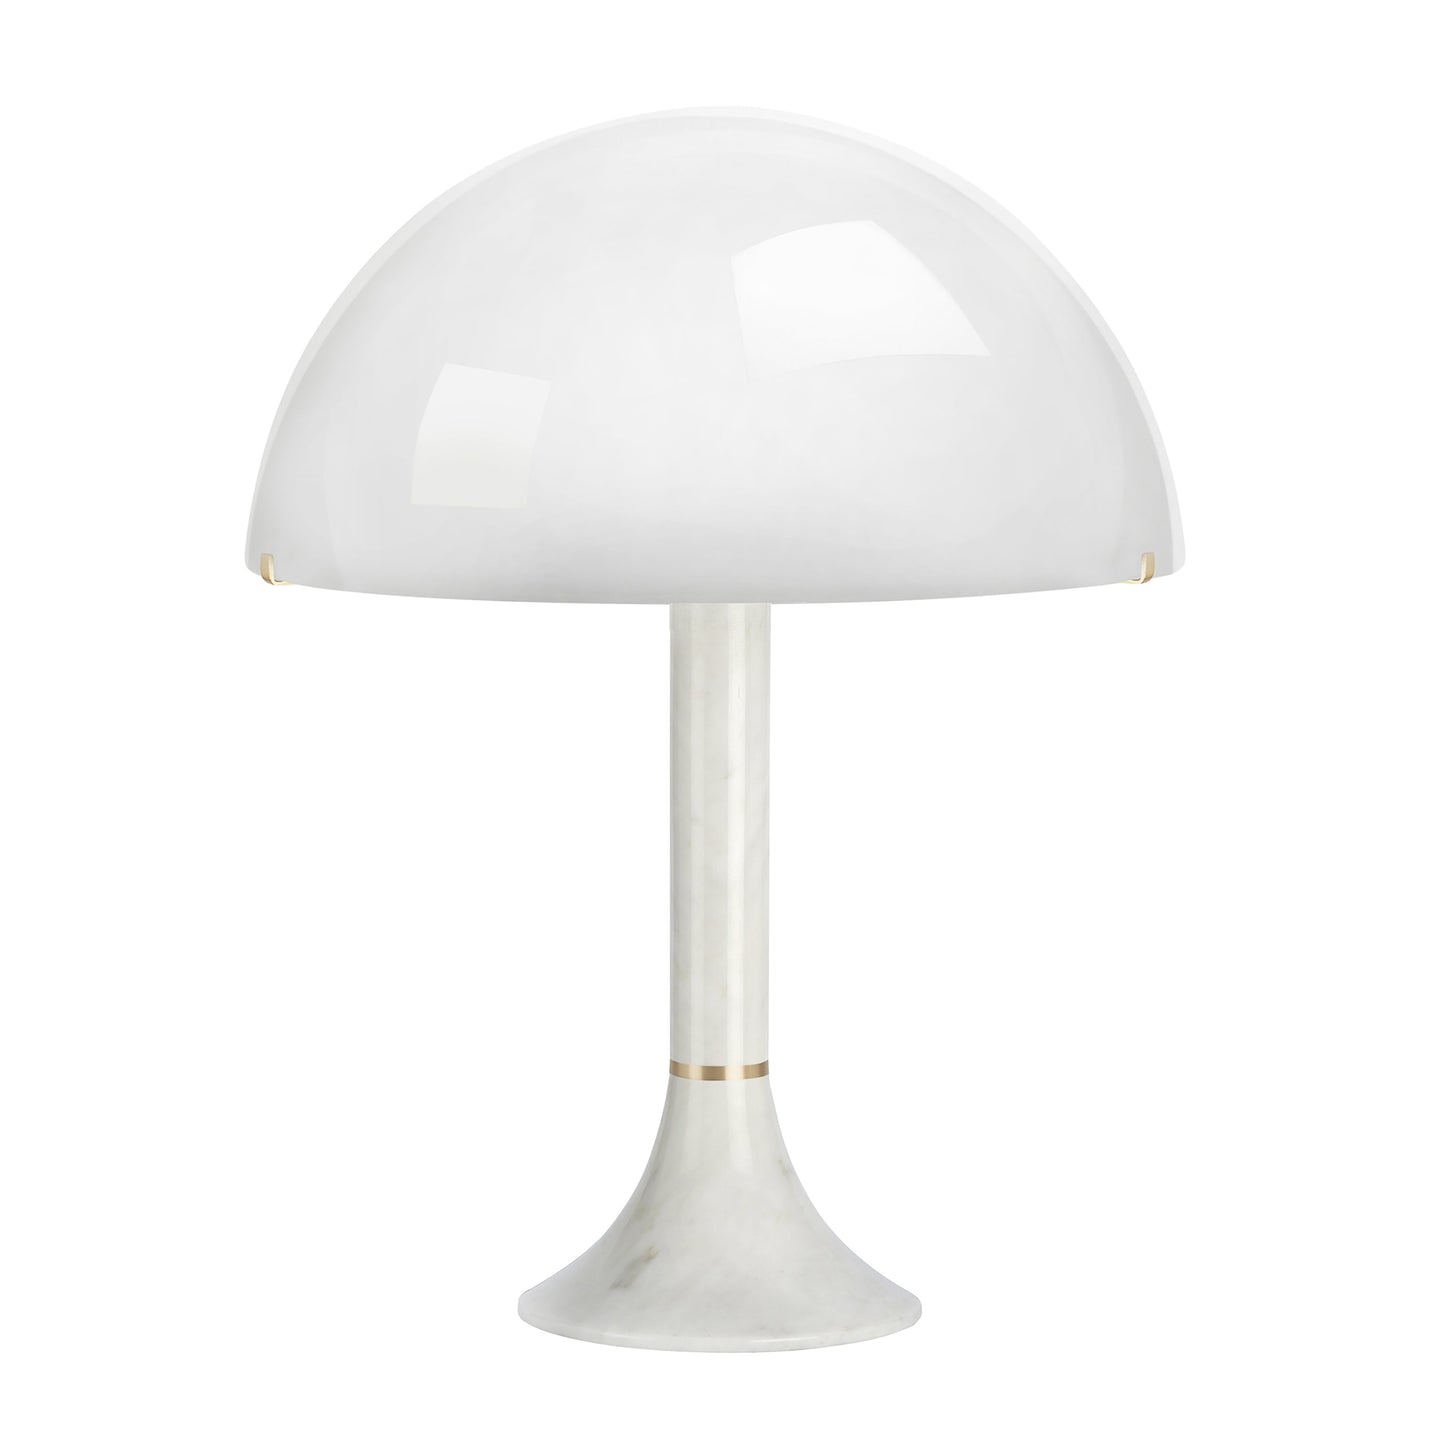 Bloomsbury Table Lamp